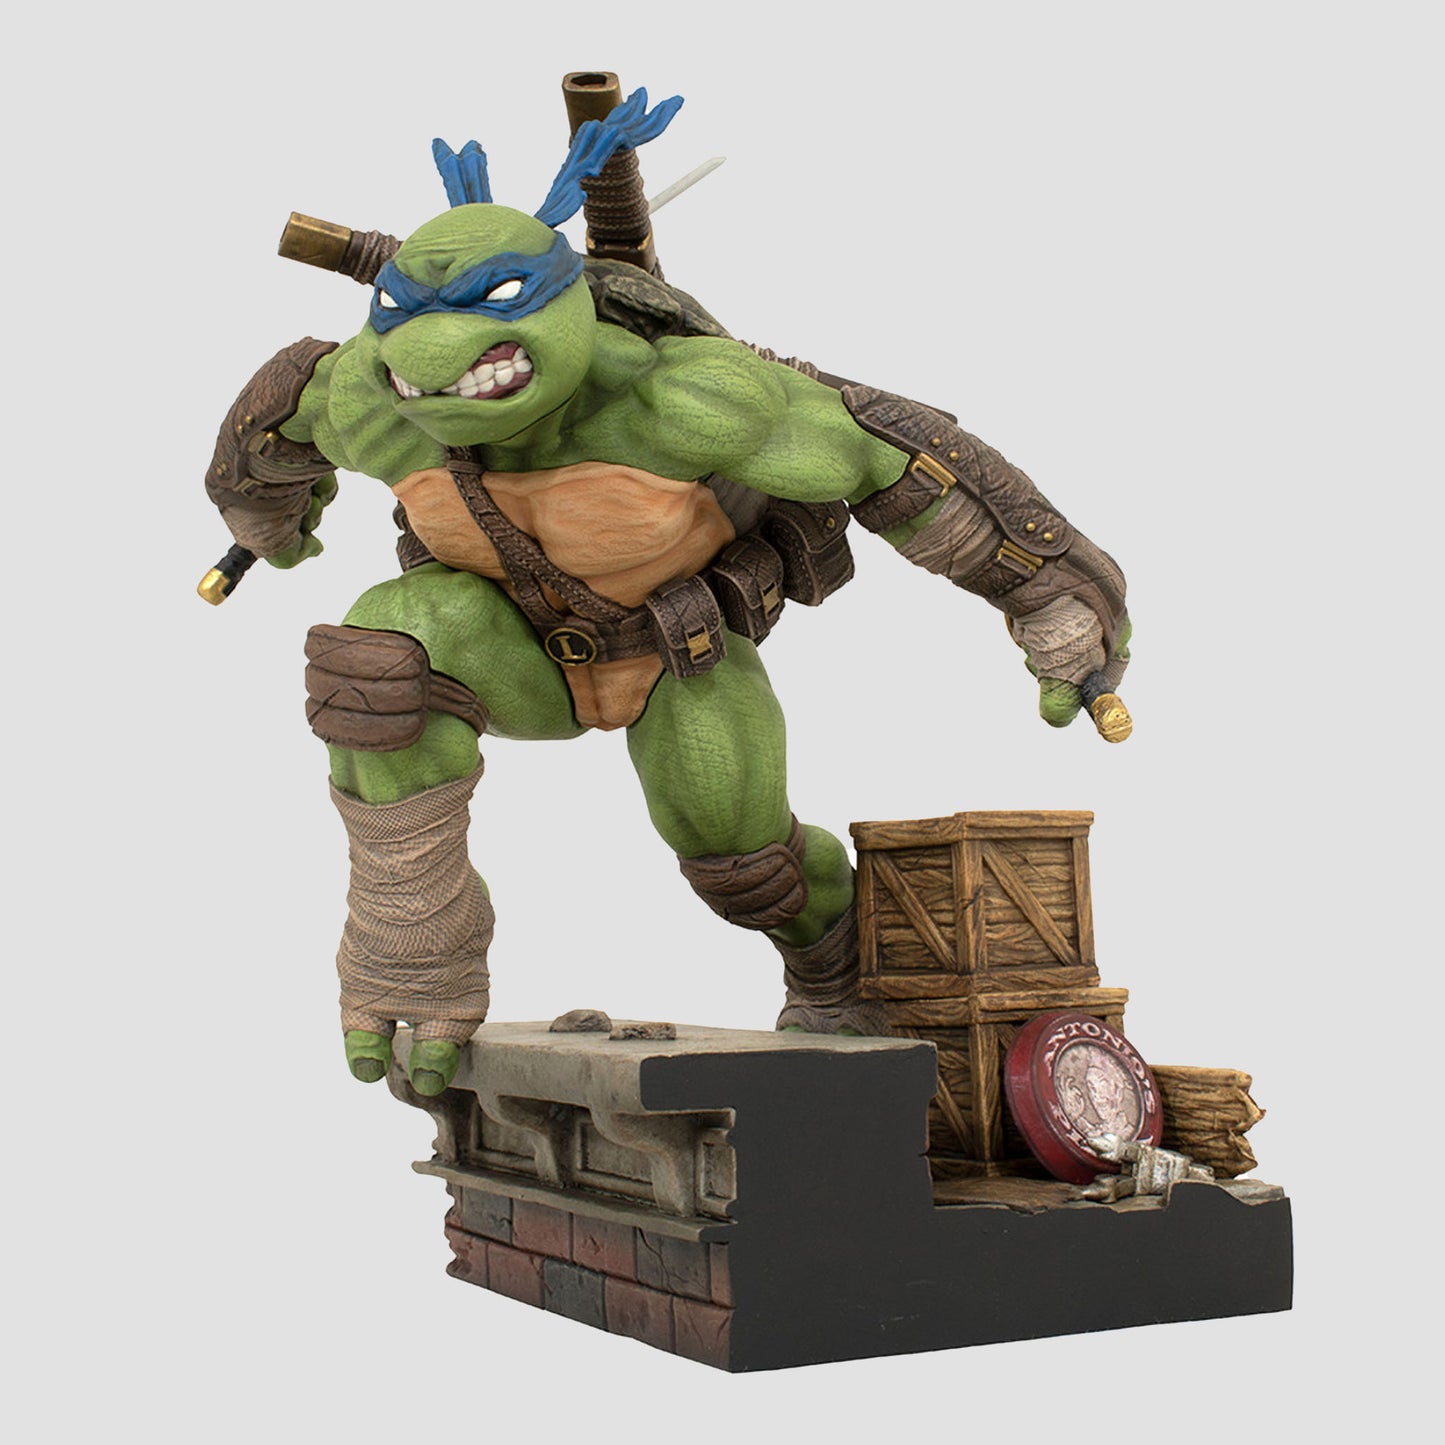 Leonardo (Teenage Mutant Ninja Turtles) Gallery Statue